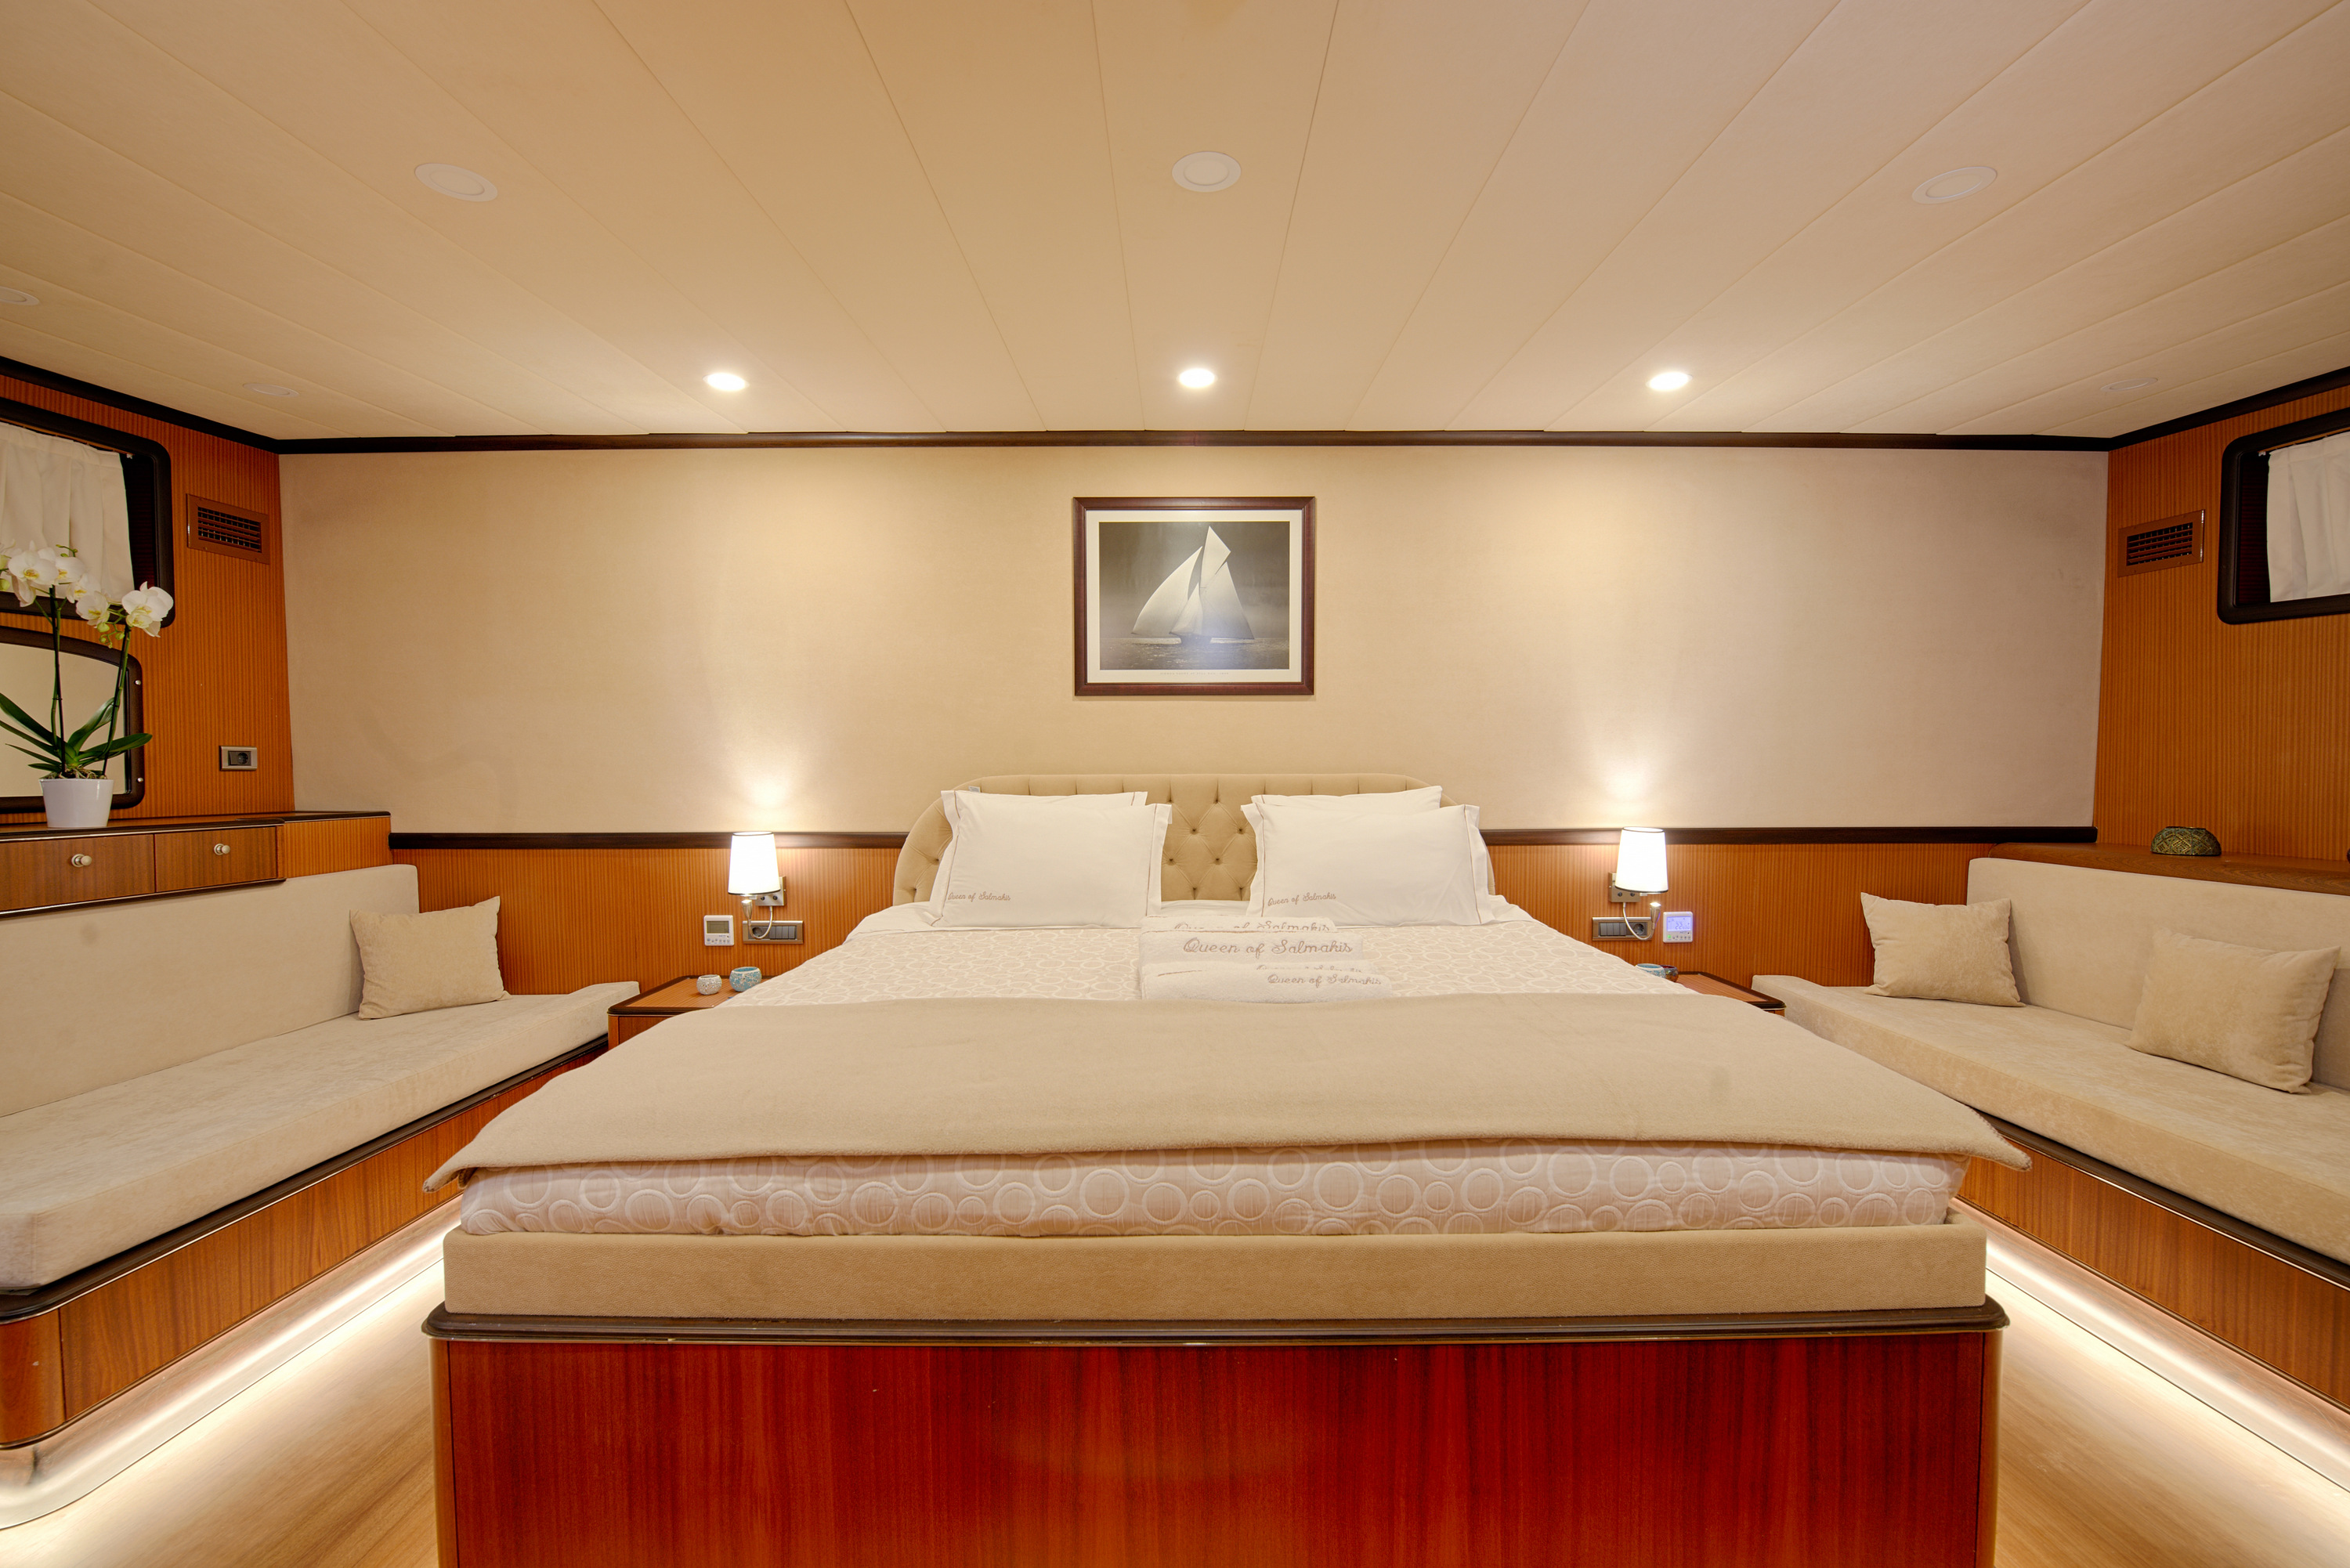 Fore Master Suite With Classic Elegant Interior